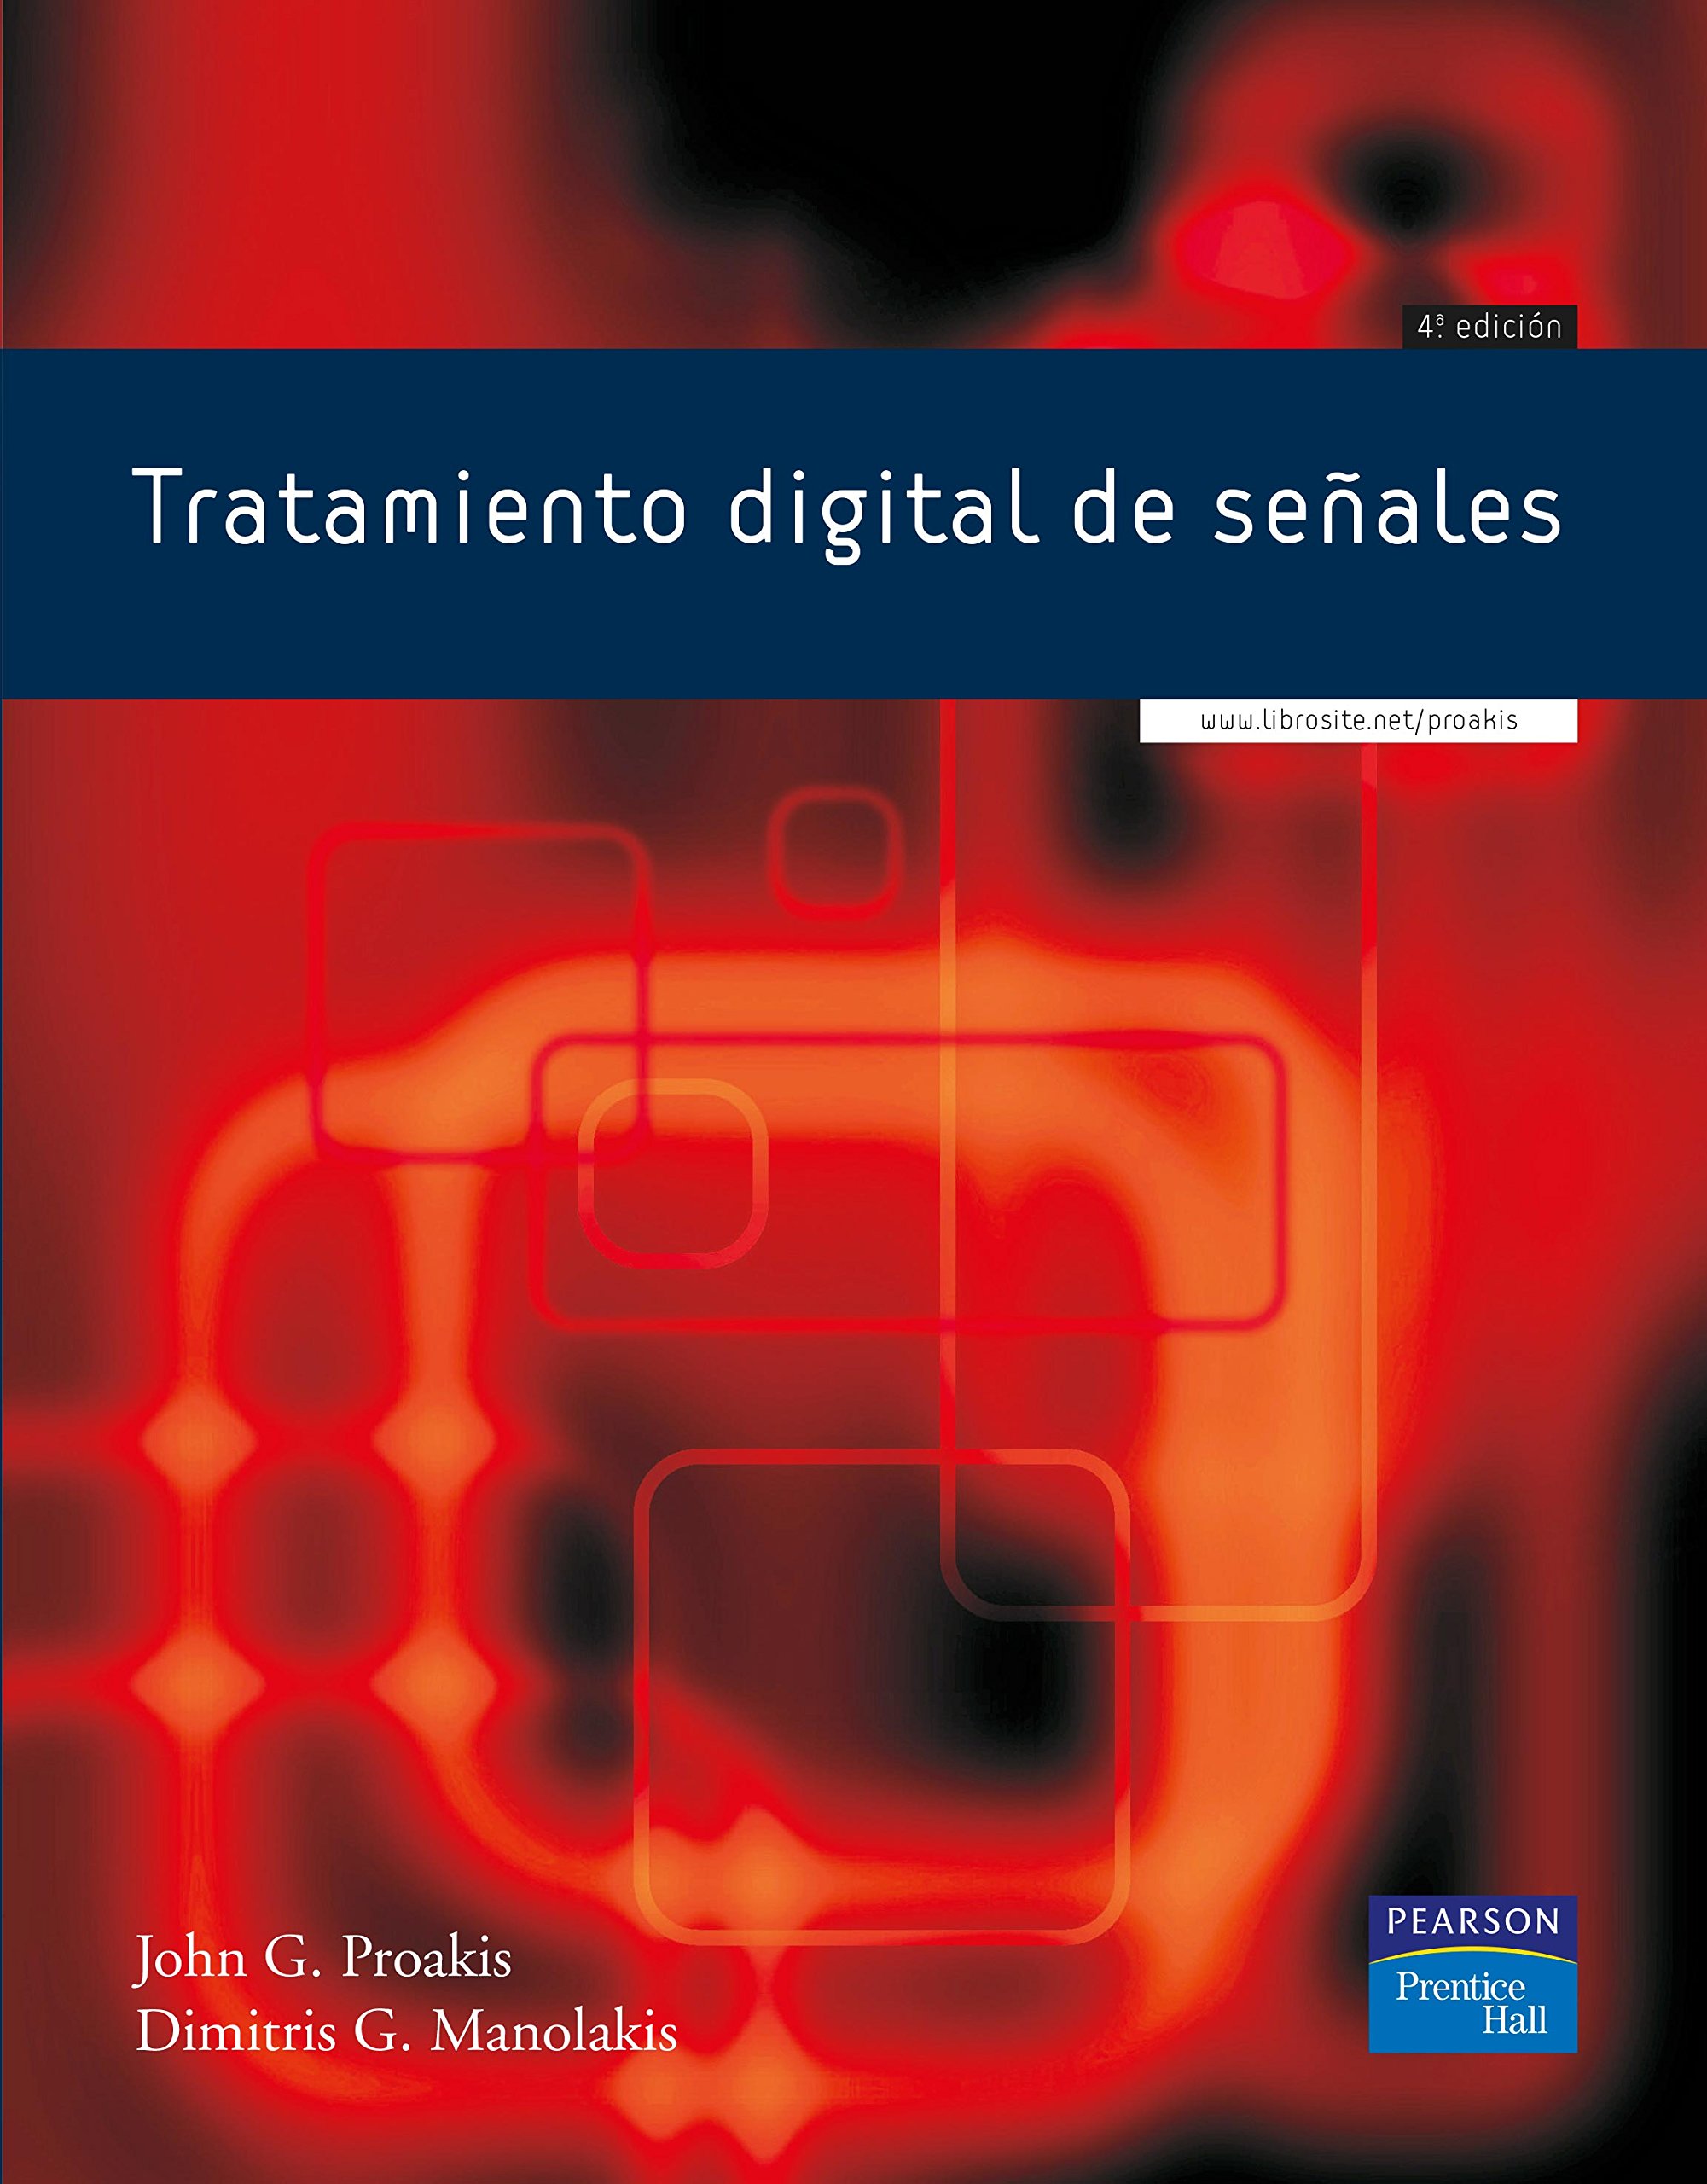 Imagen de portada del libro Tratamiento digital de señales